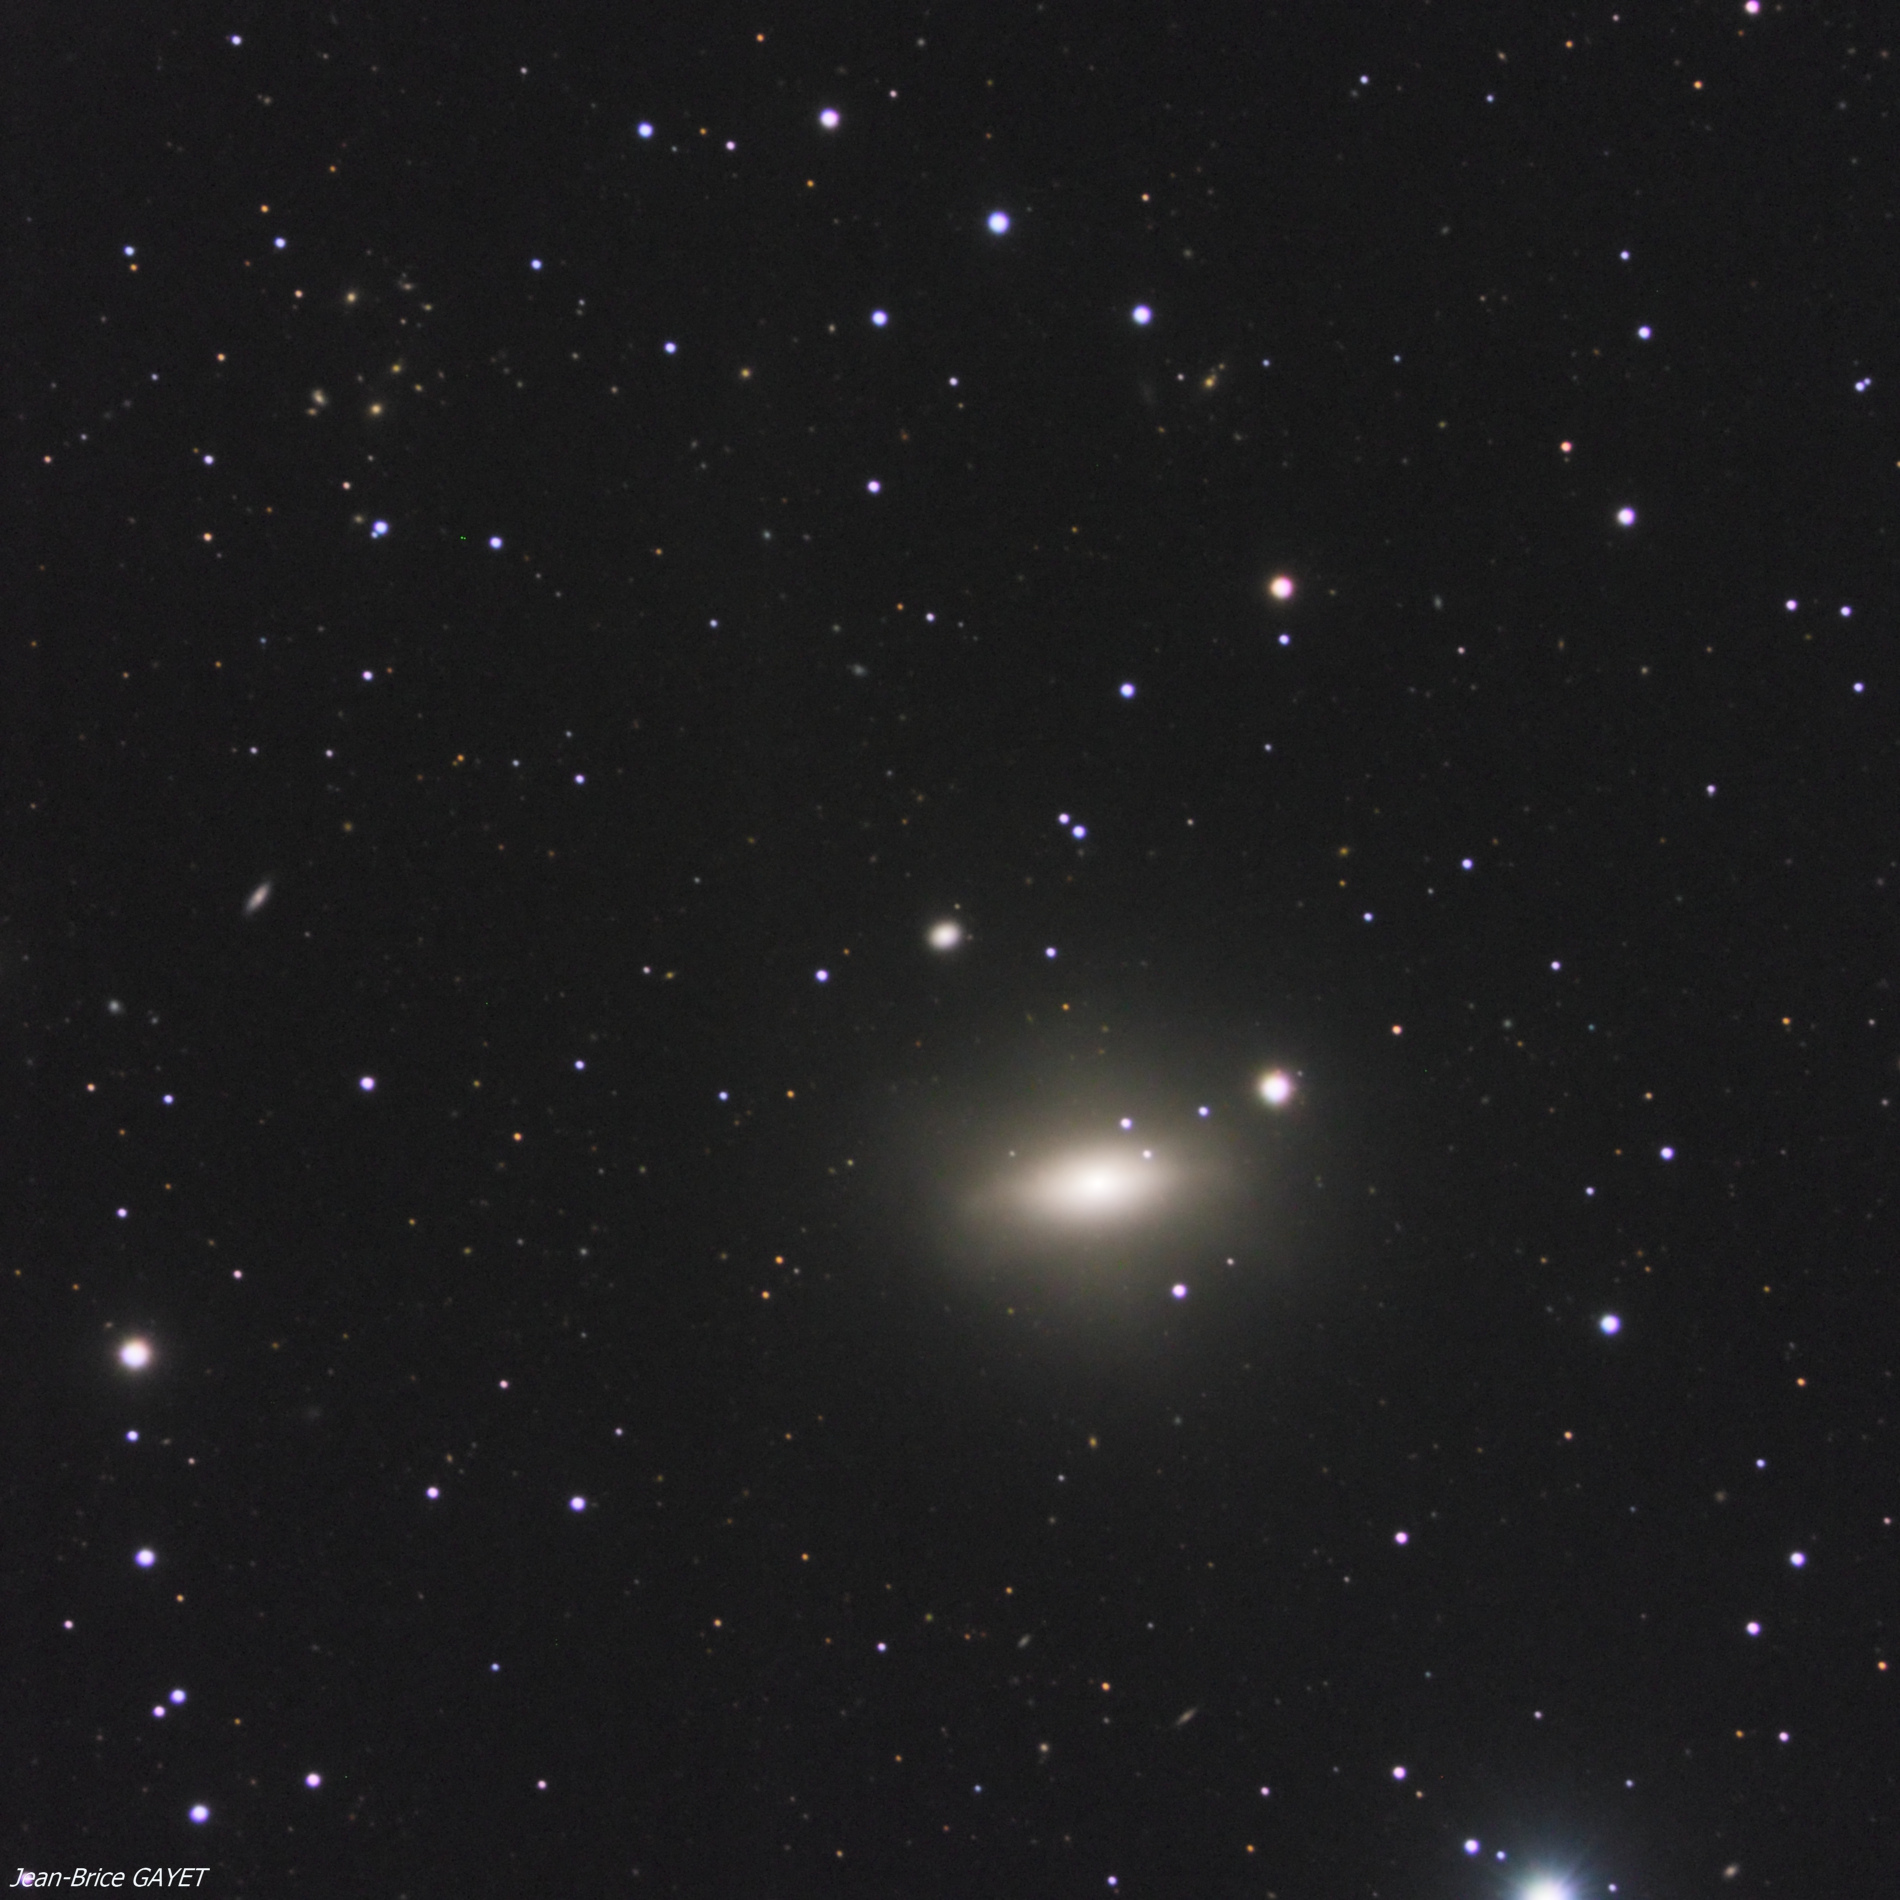 5c6097d538f6e_NGC4121NGC4125Jean-BriceGAYET.jpg.524442fb6a857138b6152f8acc963408.jpg